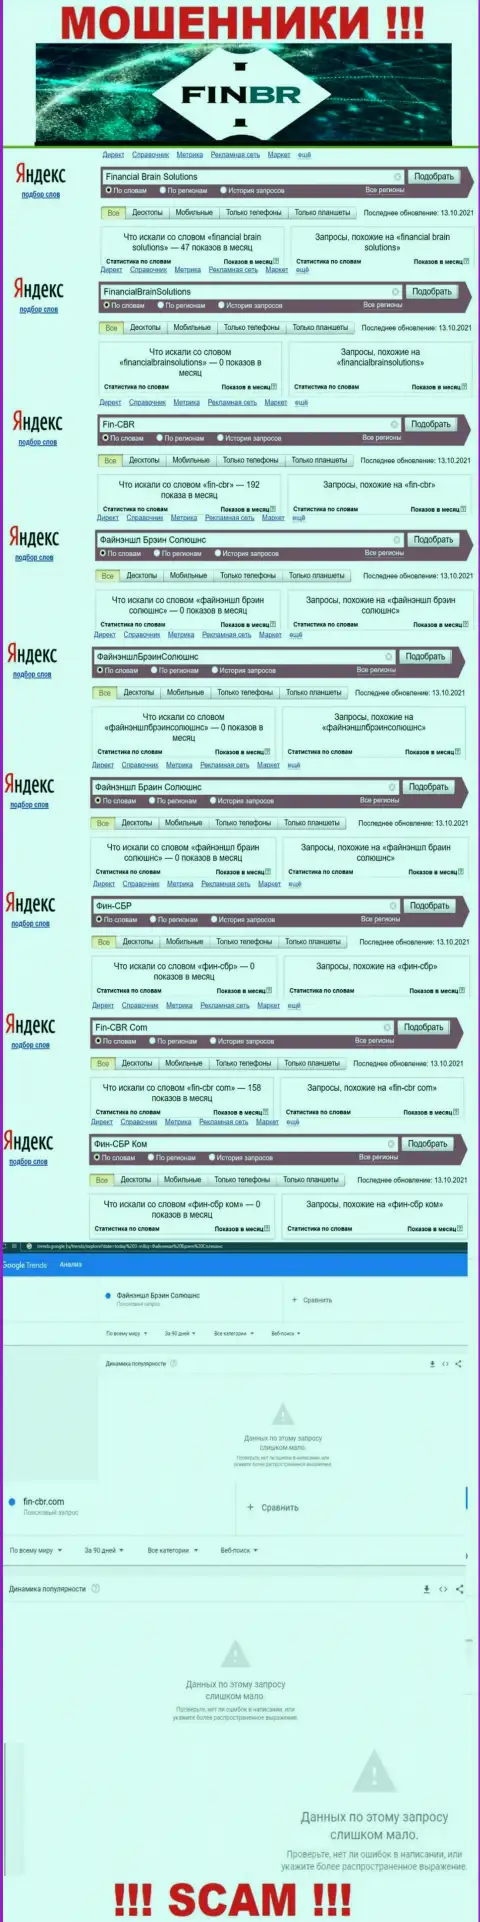 Статистика бренда Файнэншл Брэин Солюшнс, какое именно количество онлайн запросов у указанной шарашки